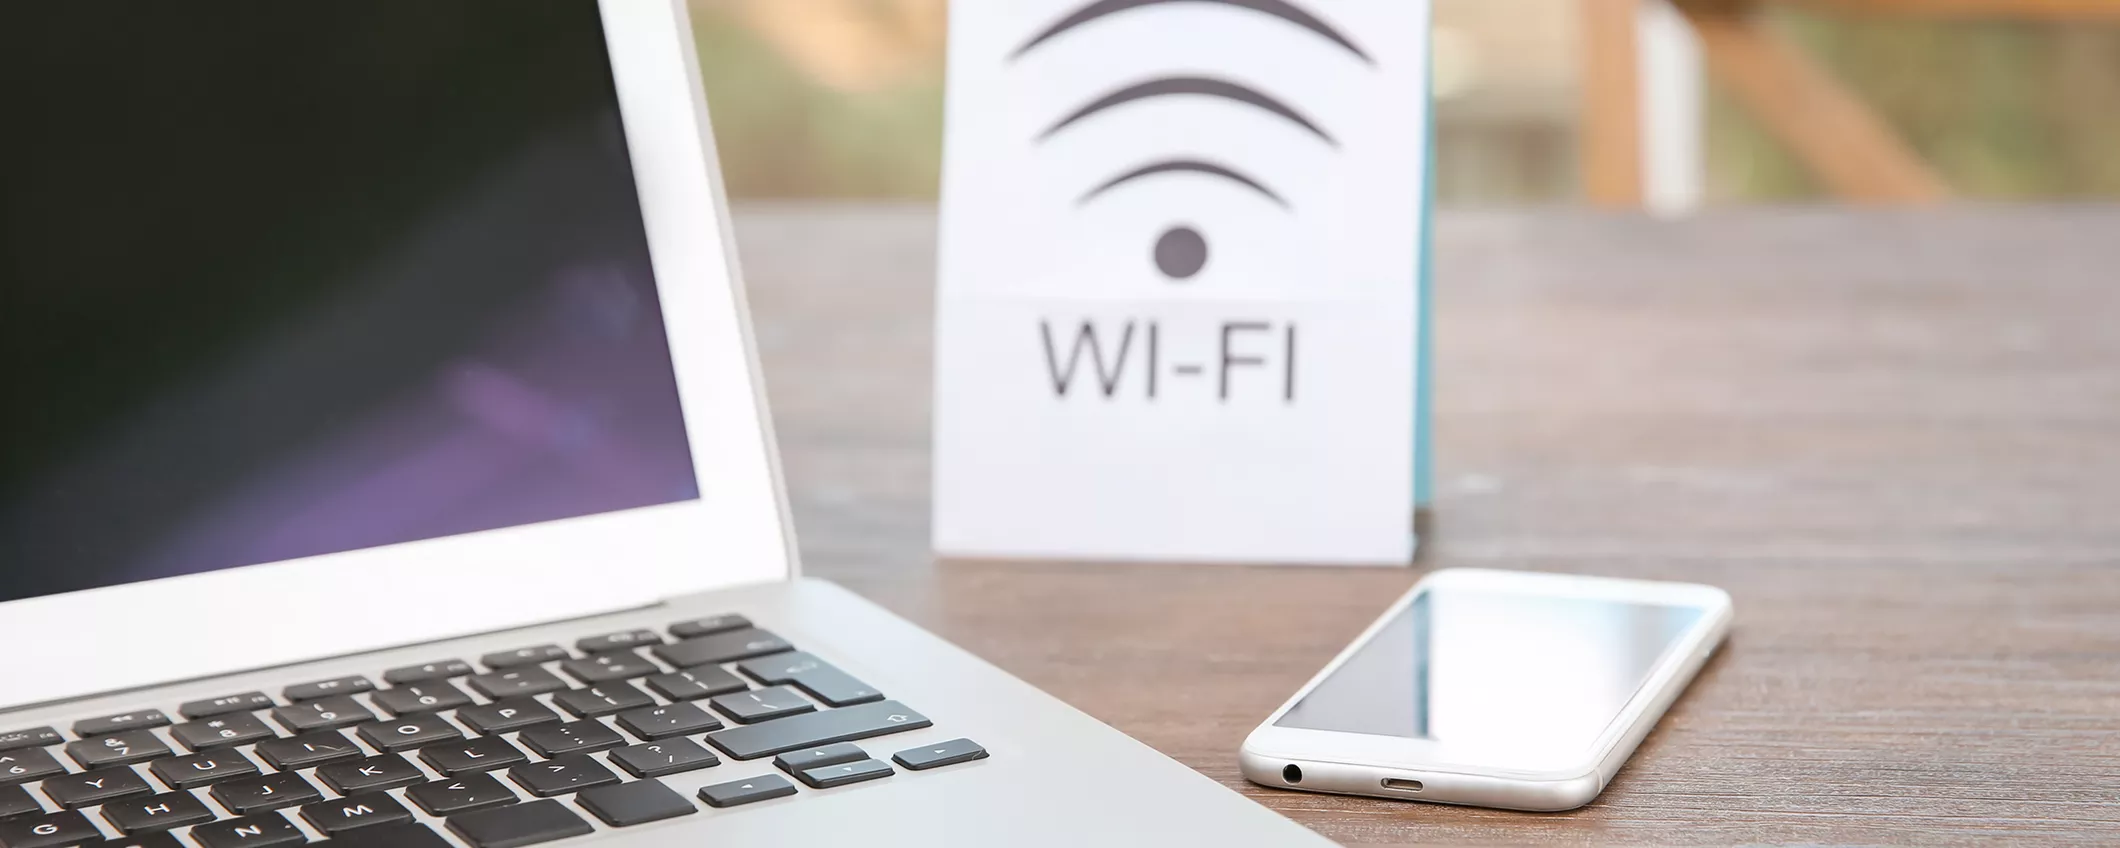 Non temere il Wi-Fi pubblico: ti protegge ExpressVPN, al 49% di sconto